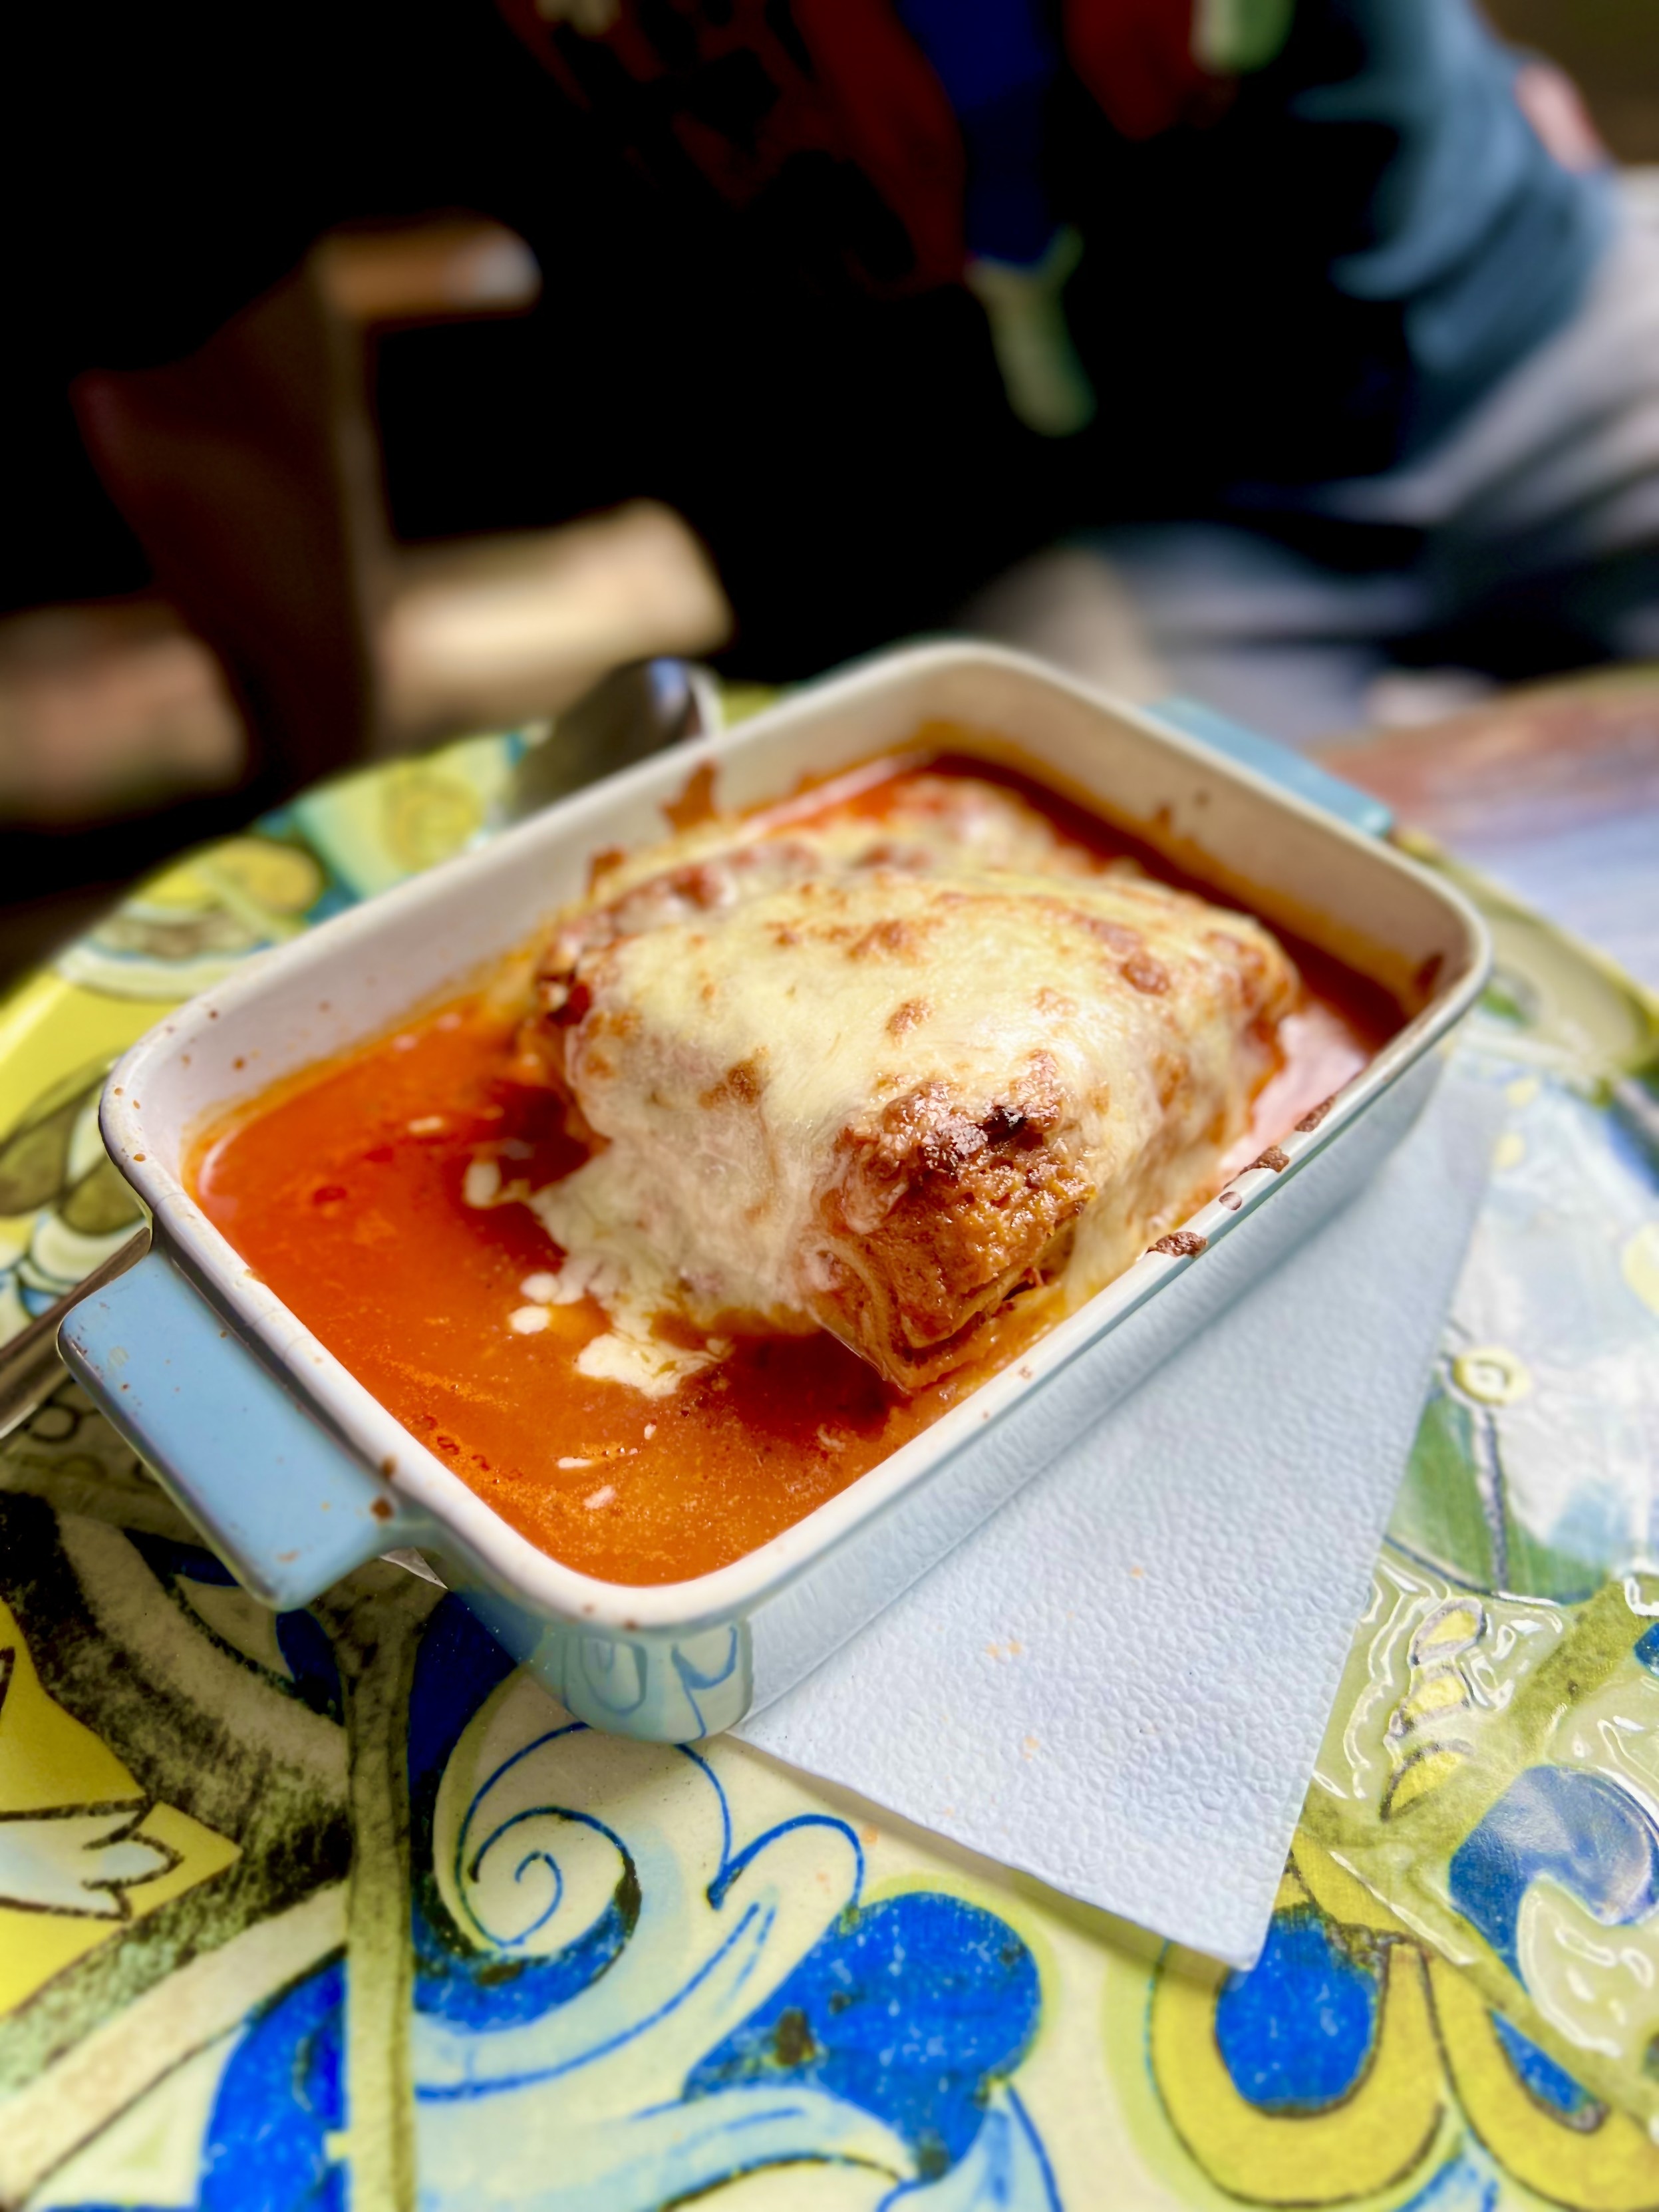 Eine Portion Lasagne, bedeckt mit geschmolzenem Käse, serviert in einer kleinen blauen Auflaufform auf einem bunt gemusterten Tisch.